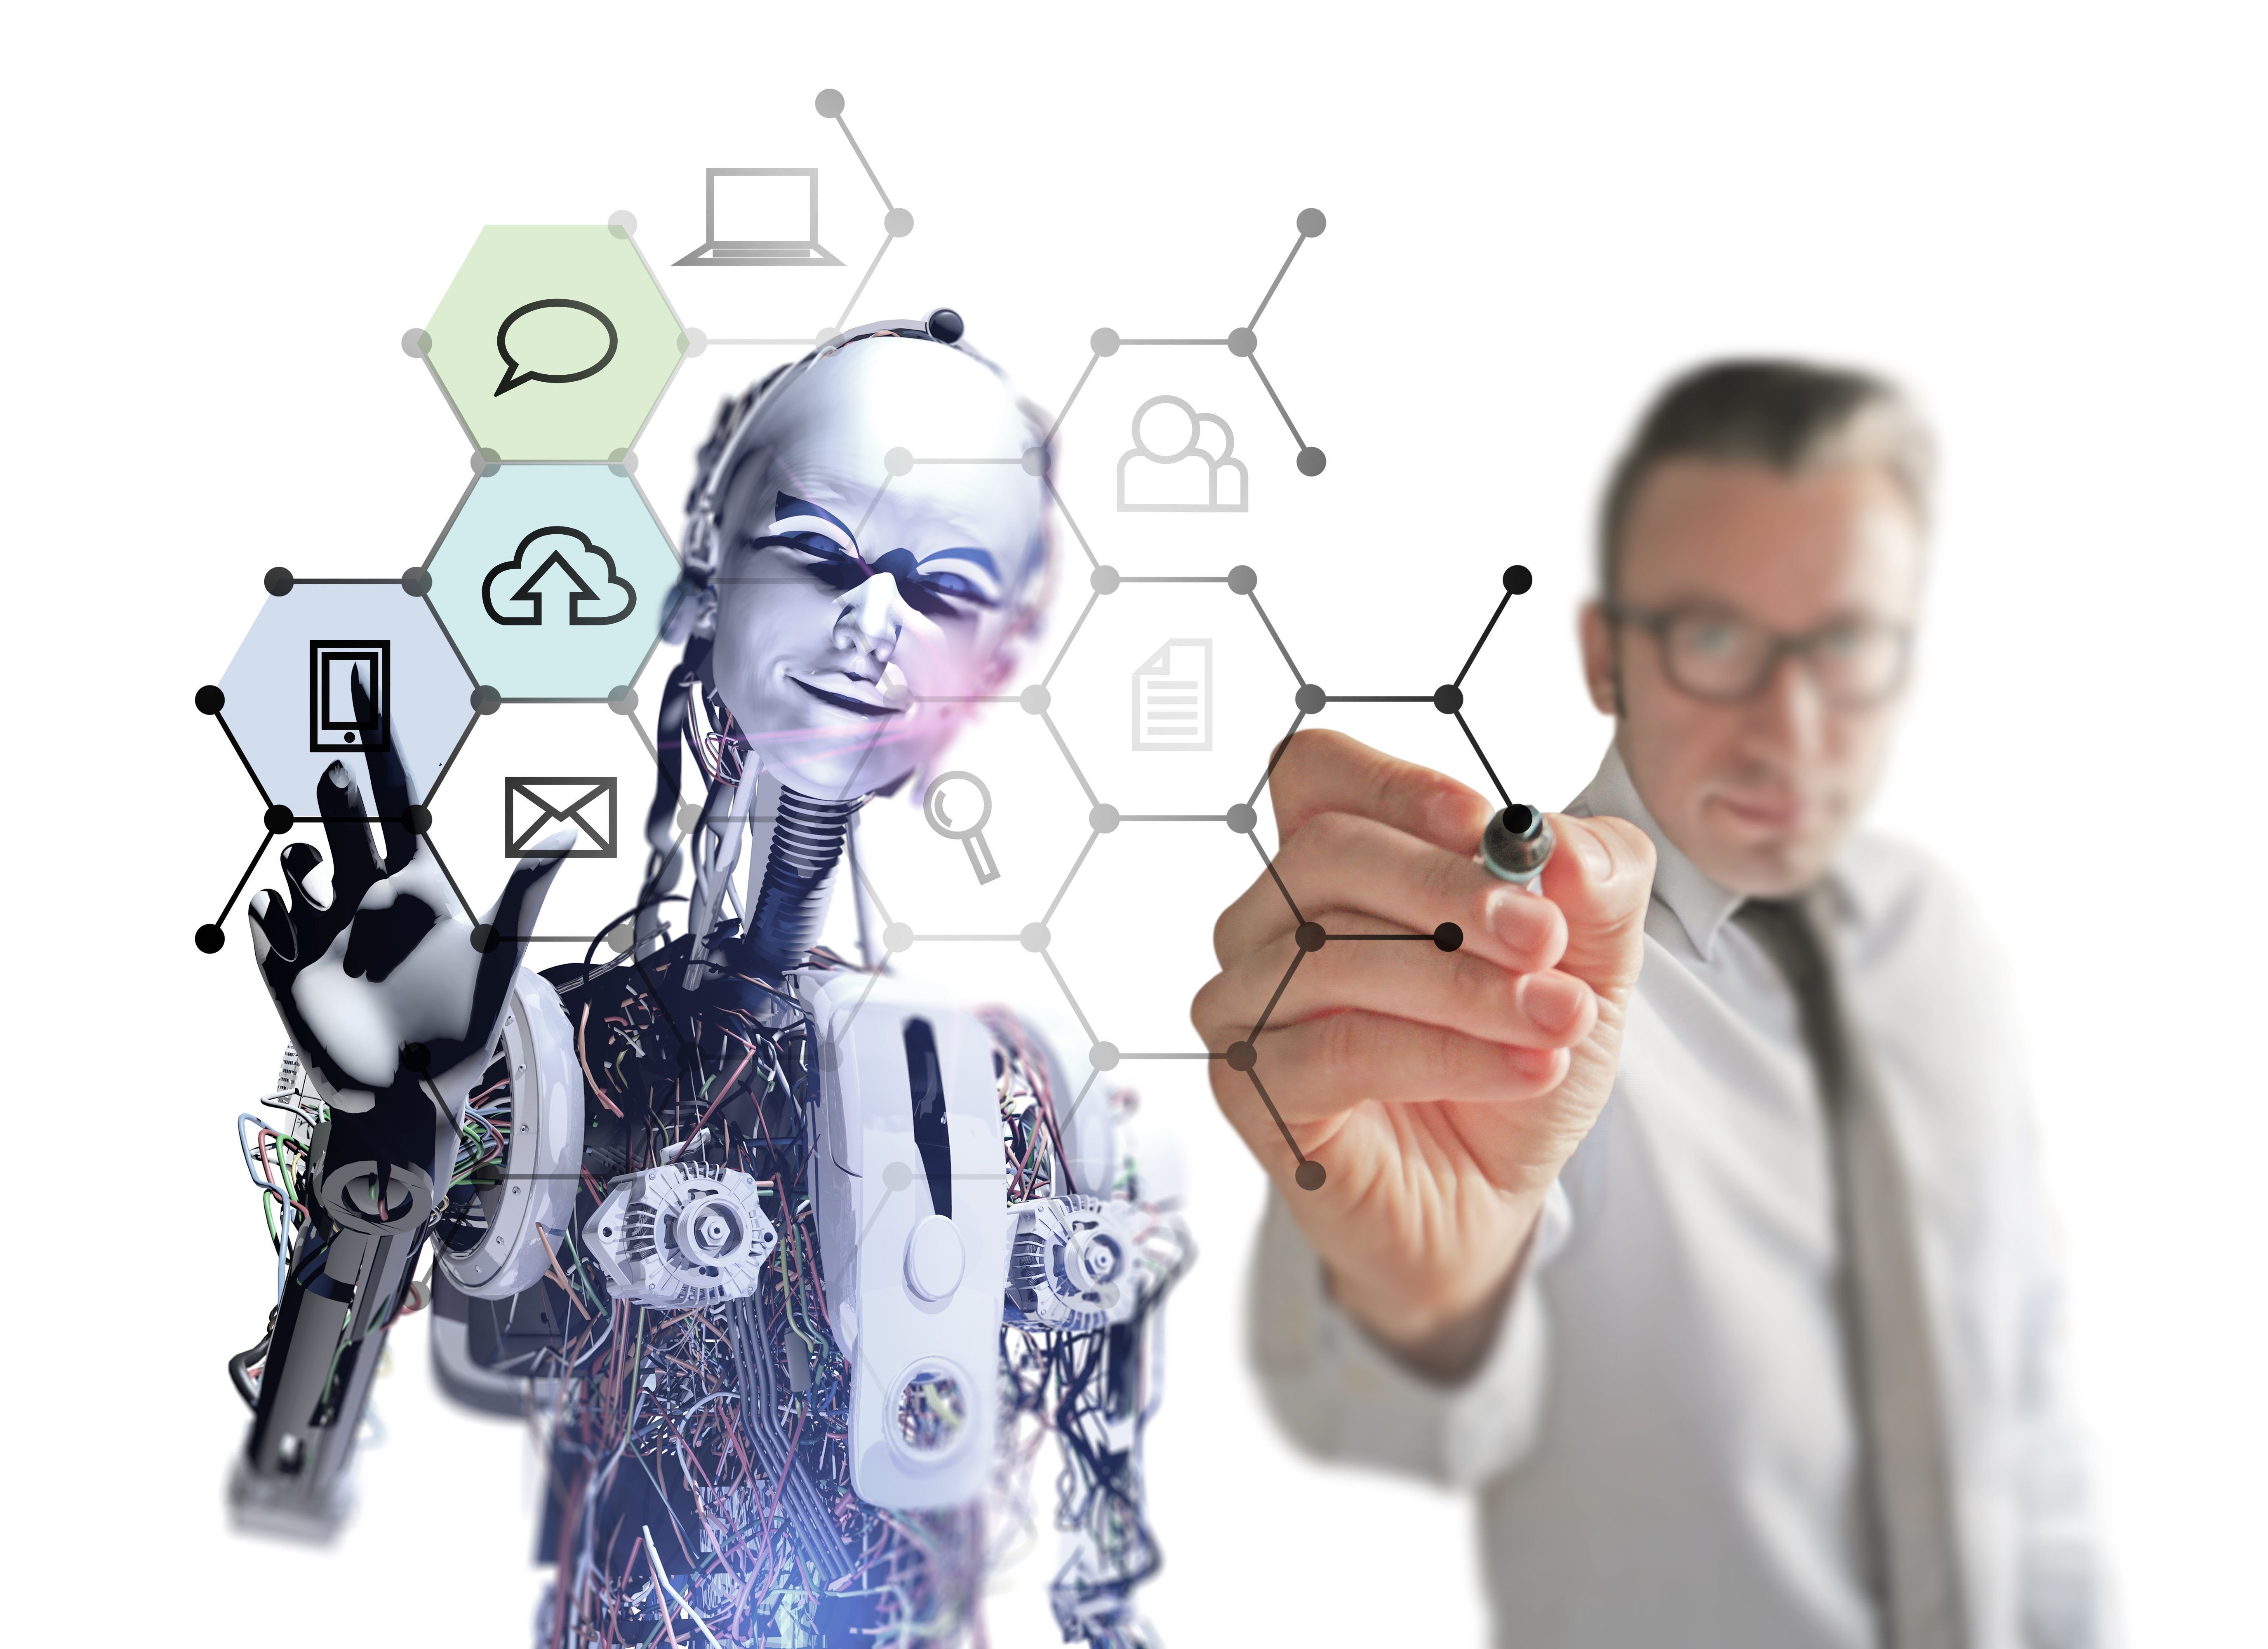 Ии личности. Технологии искусственного интеллекта. Профессии будущего. Искусственный интеллект в бизнесе. Будущее человека.